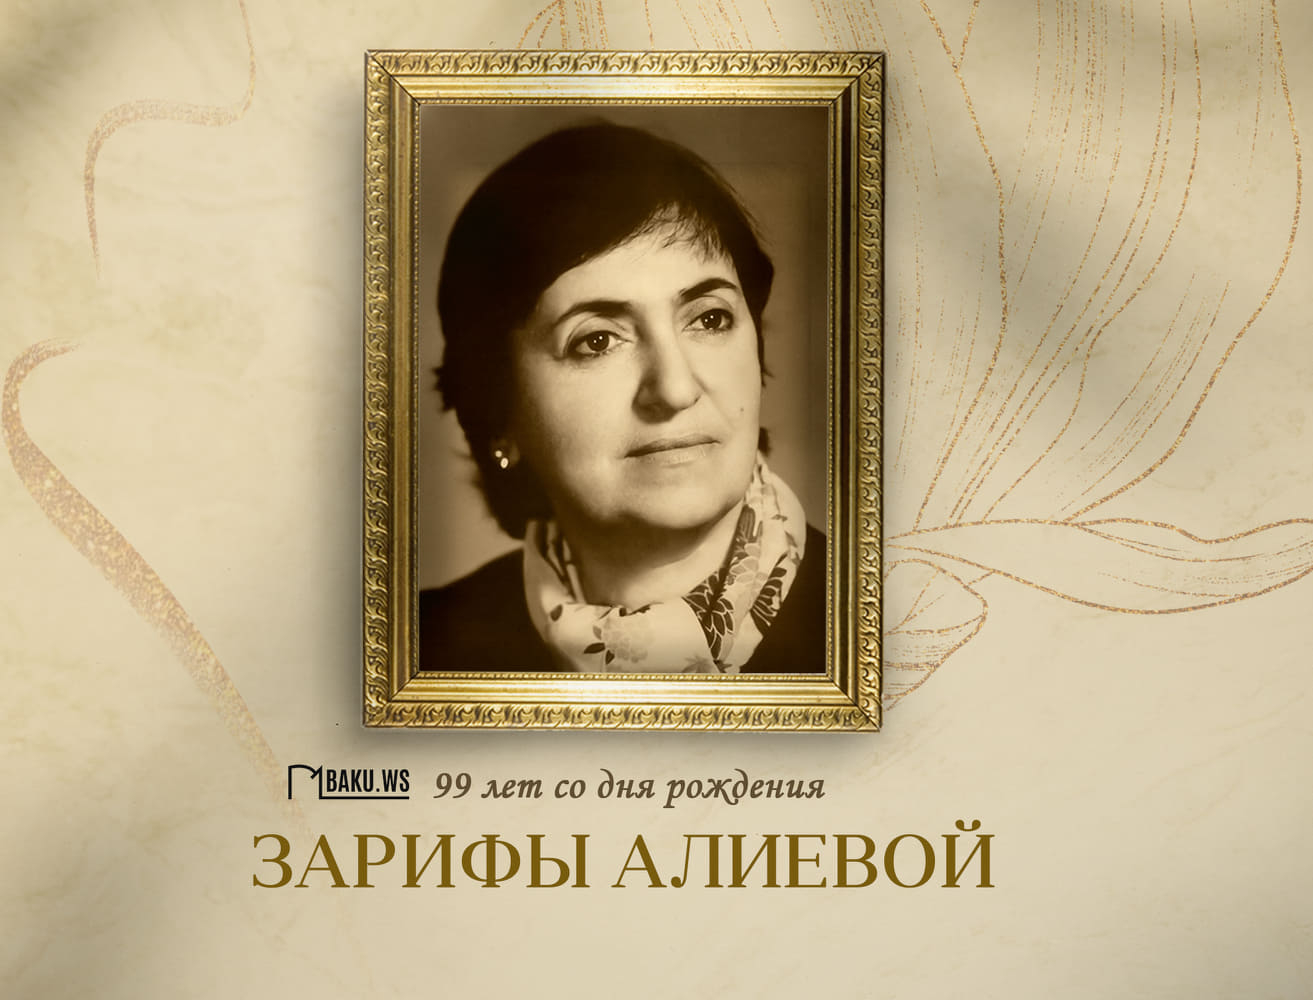 Сегодня исполняется 99 лет со дня рождения выдающегося ученого-офтальмолога, академика Зарифы Алиевой